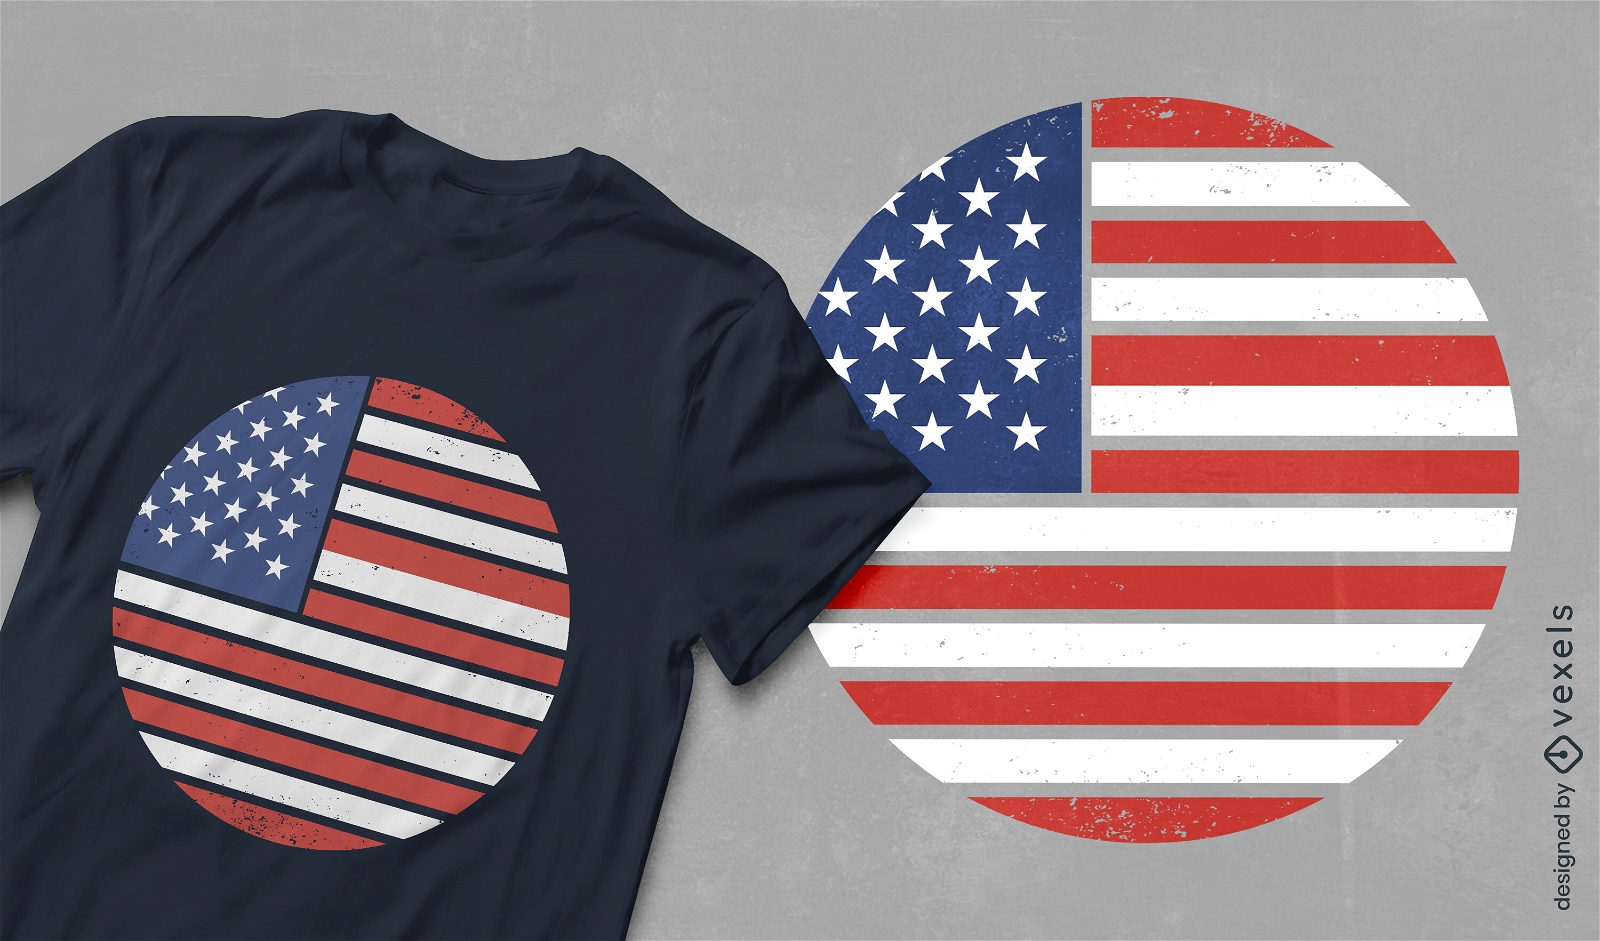 USA flax retro t-shirt design